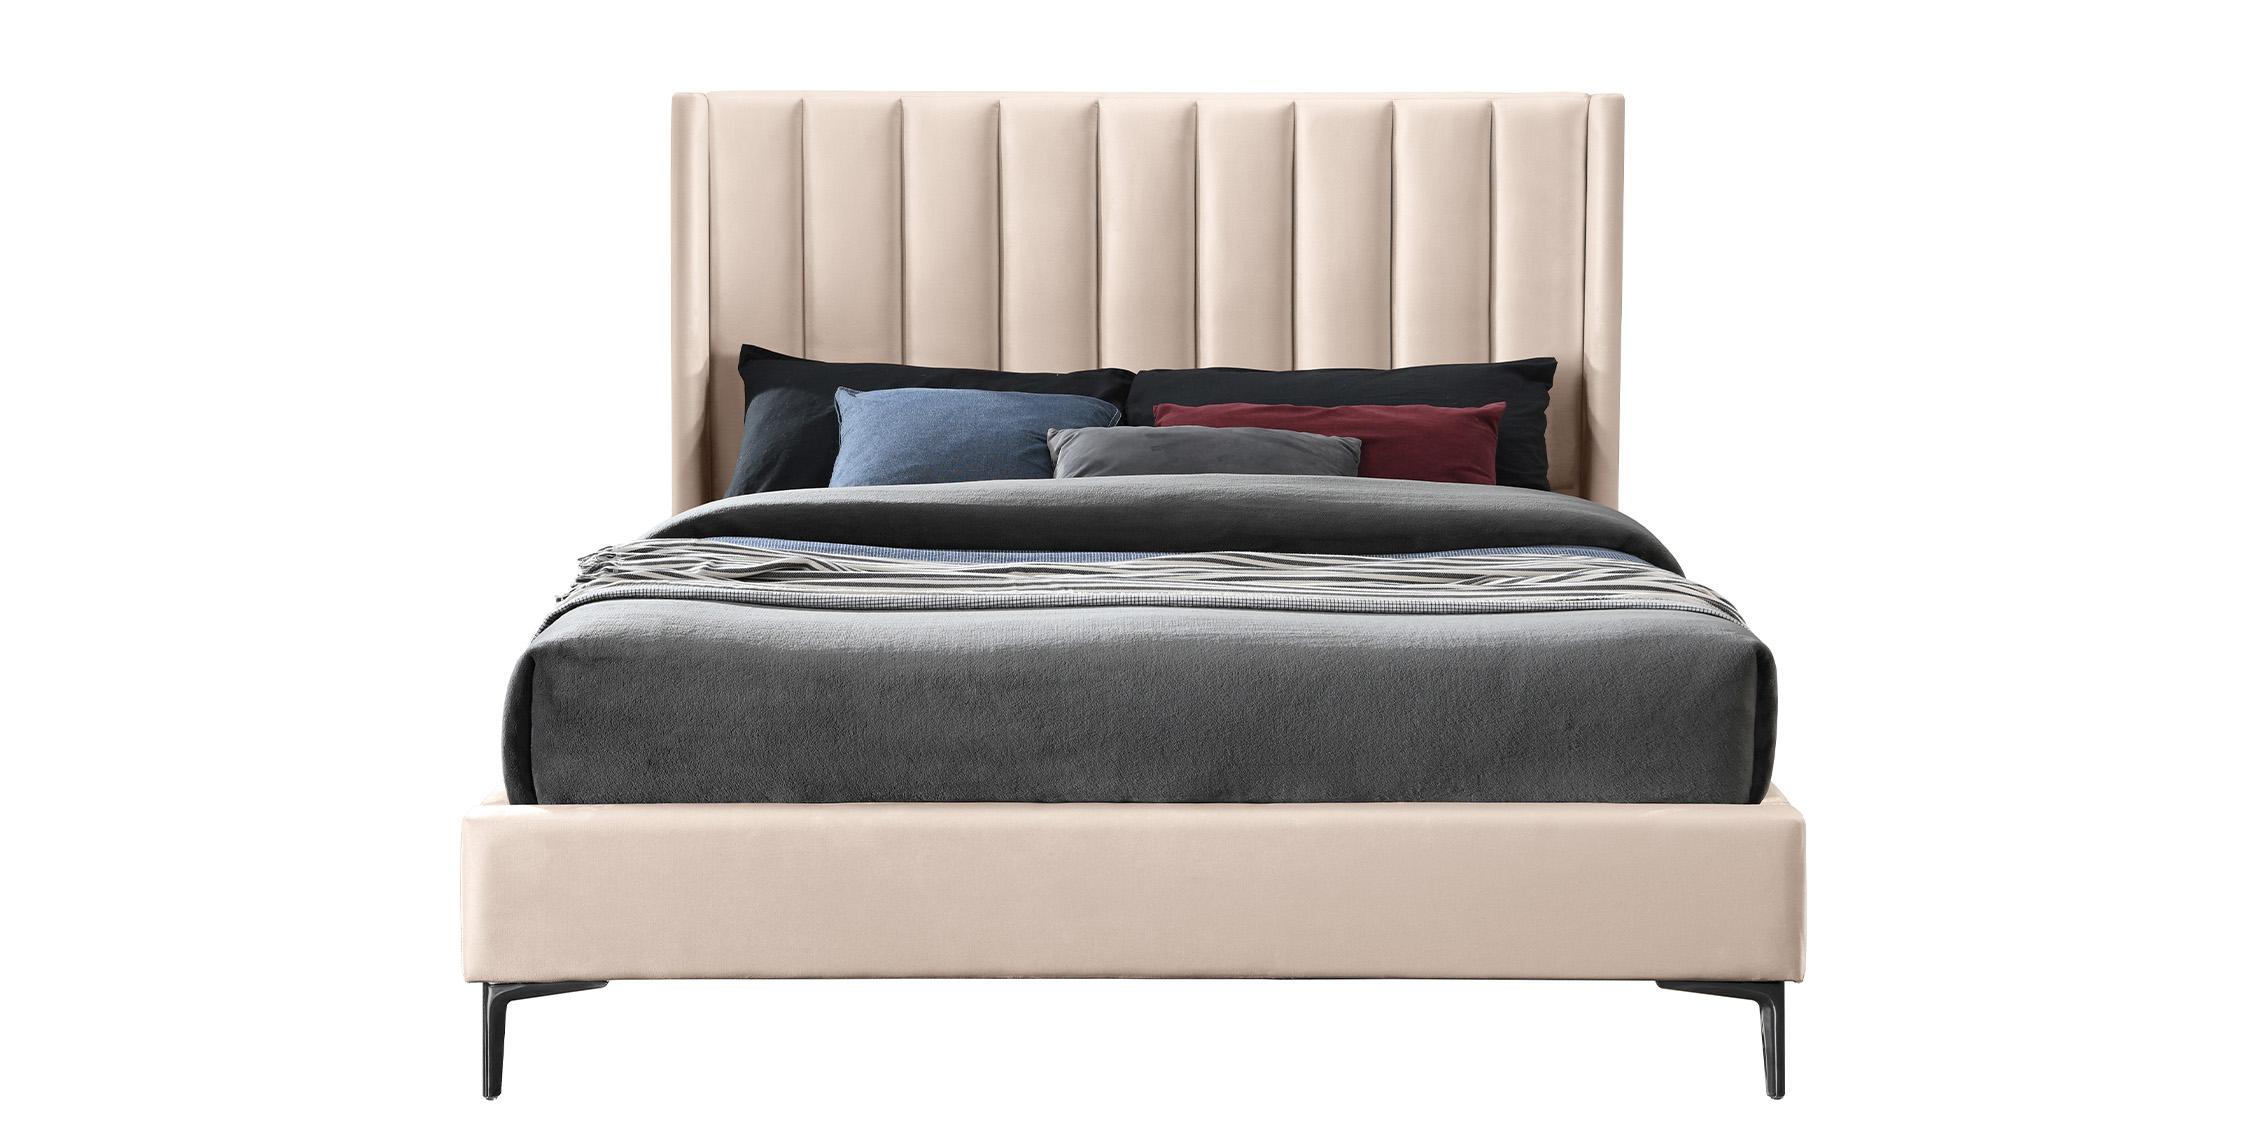 

    
NadiaPink-K Meridian Furniture Platform Bed
